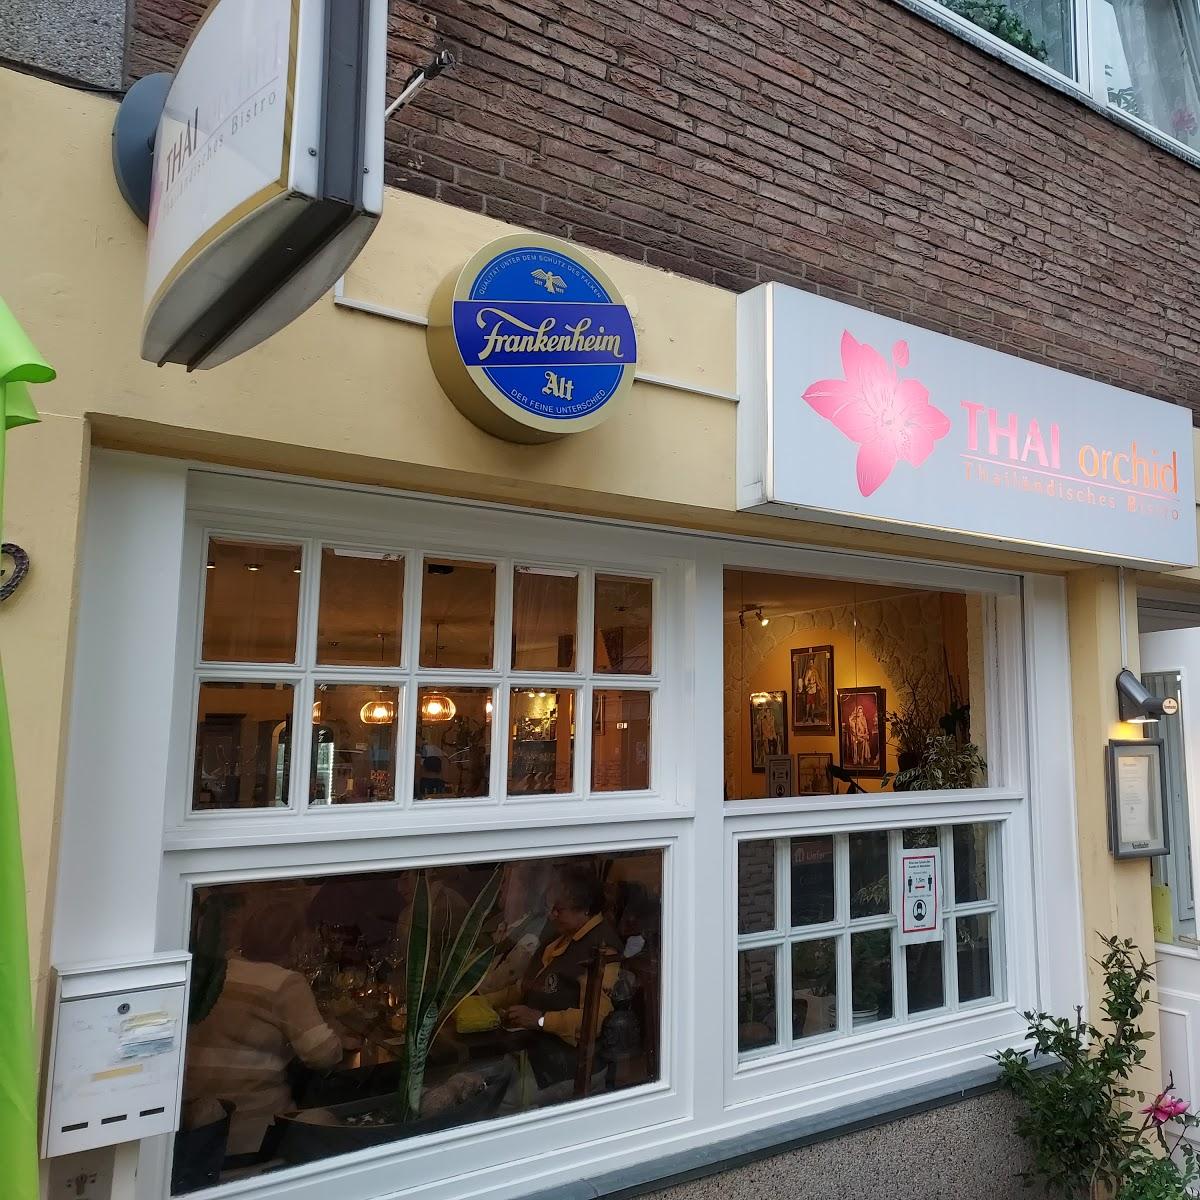 Restaurant "thai orchid bistro" in Düsseldorf